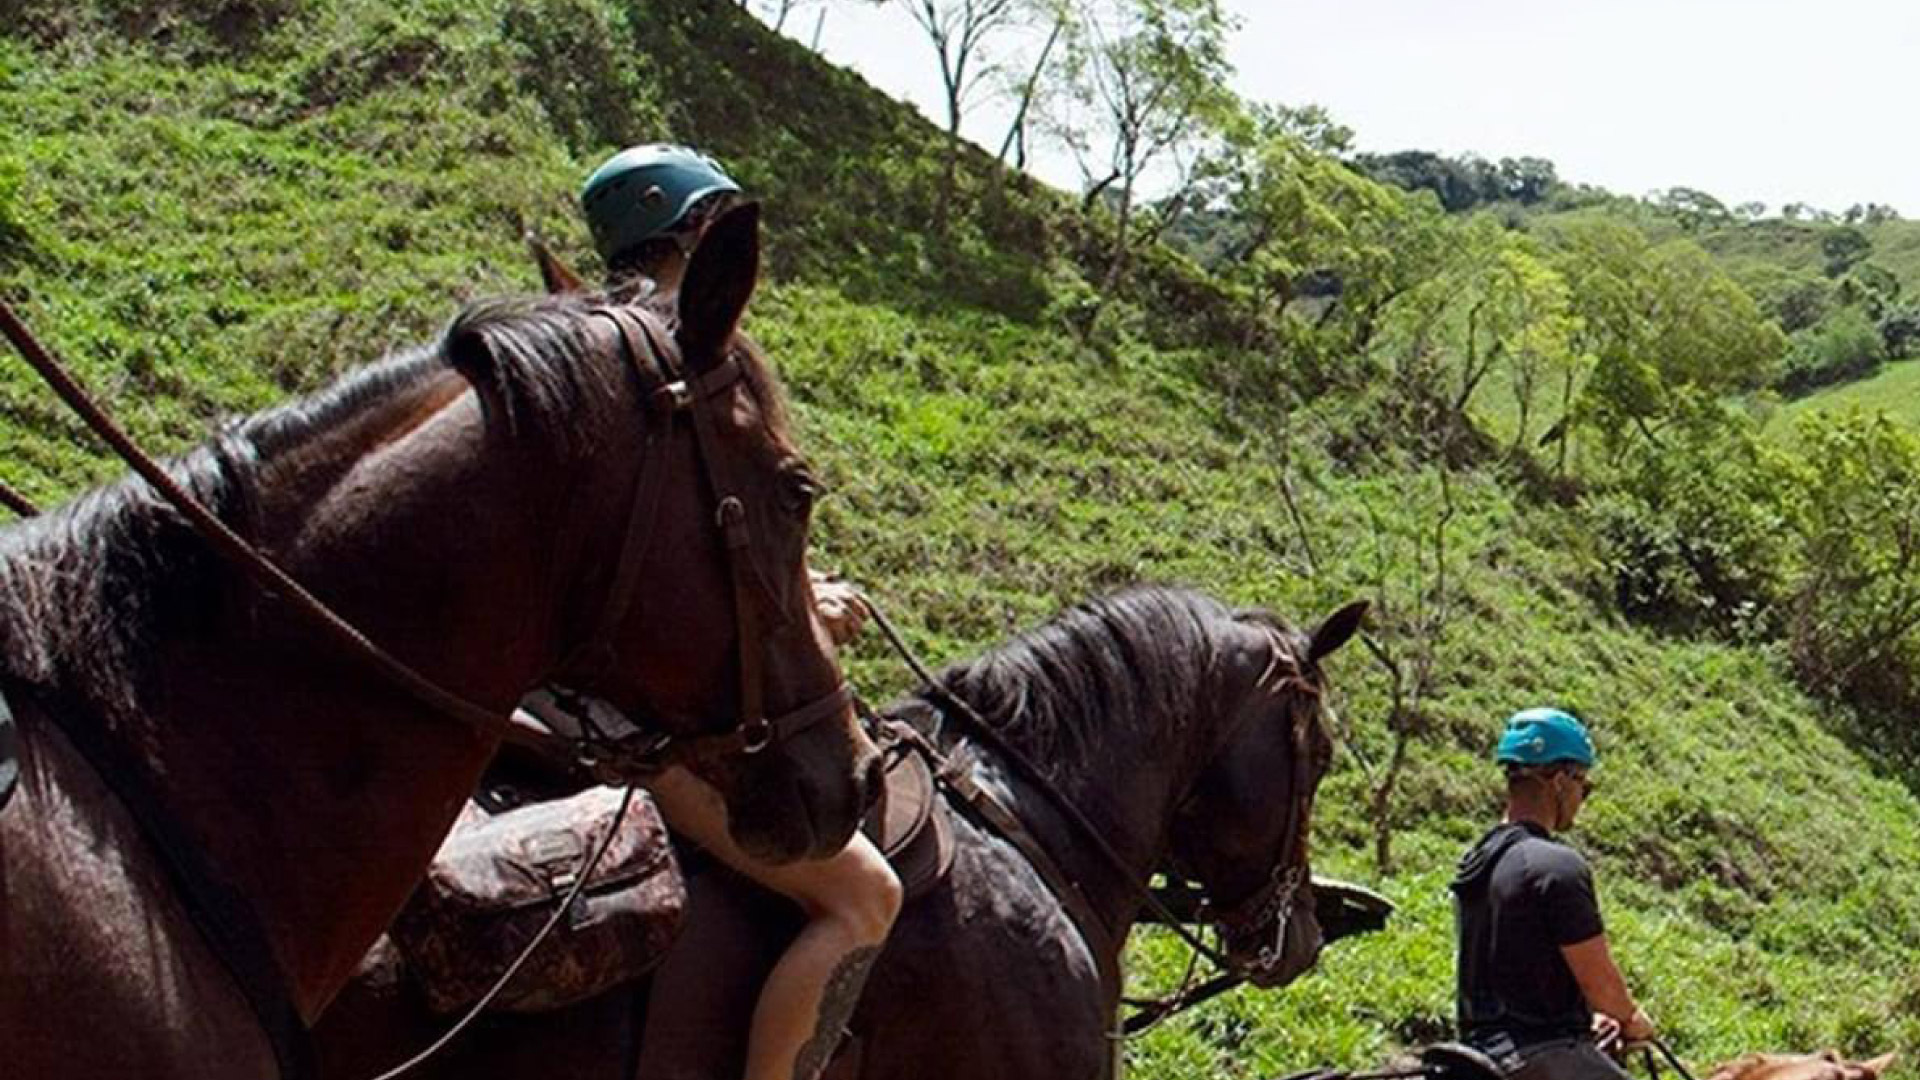 Panoramic Horseback Ride